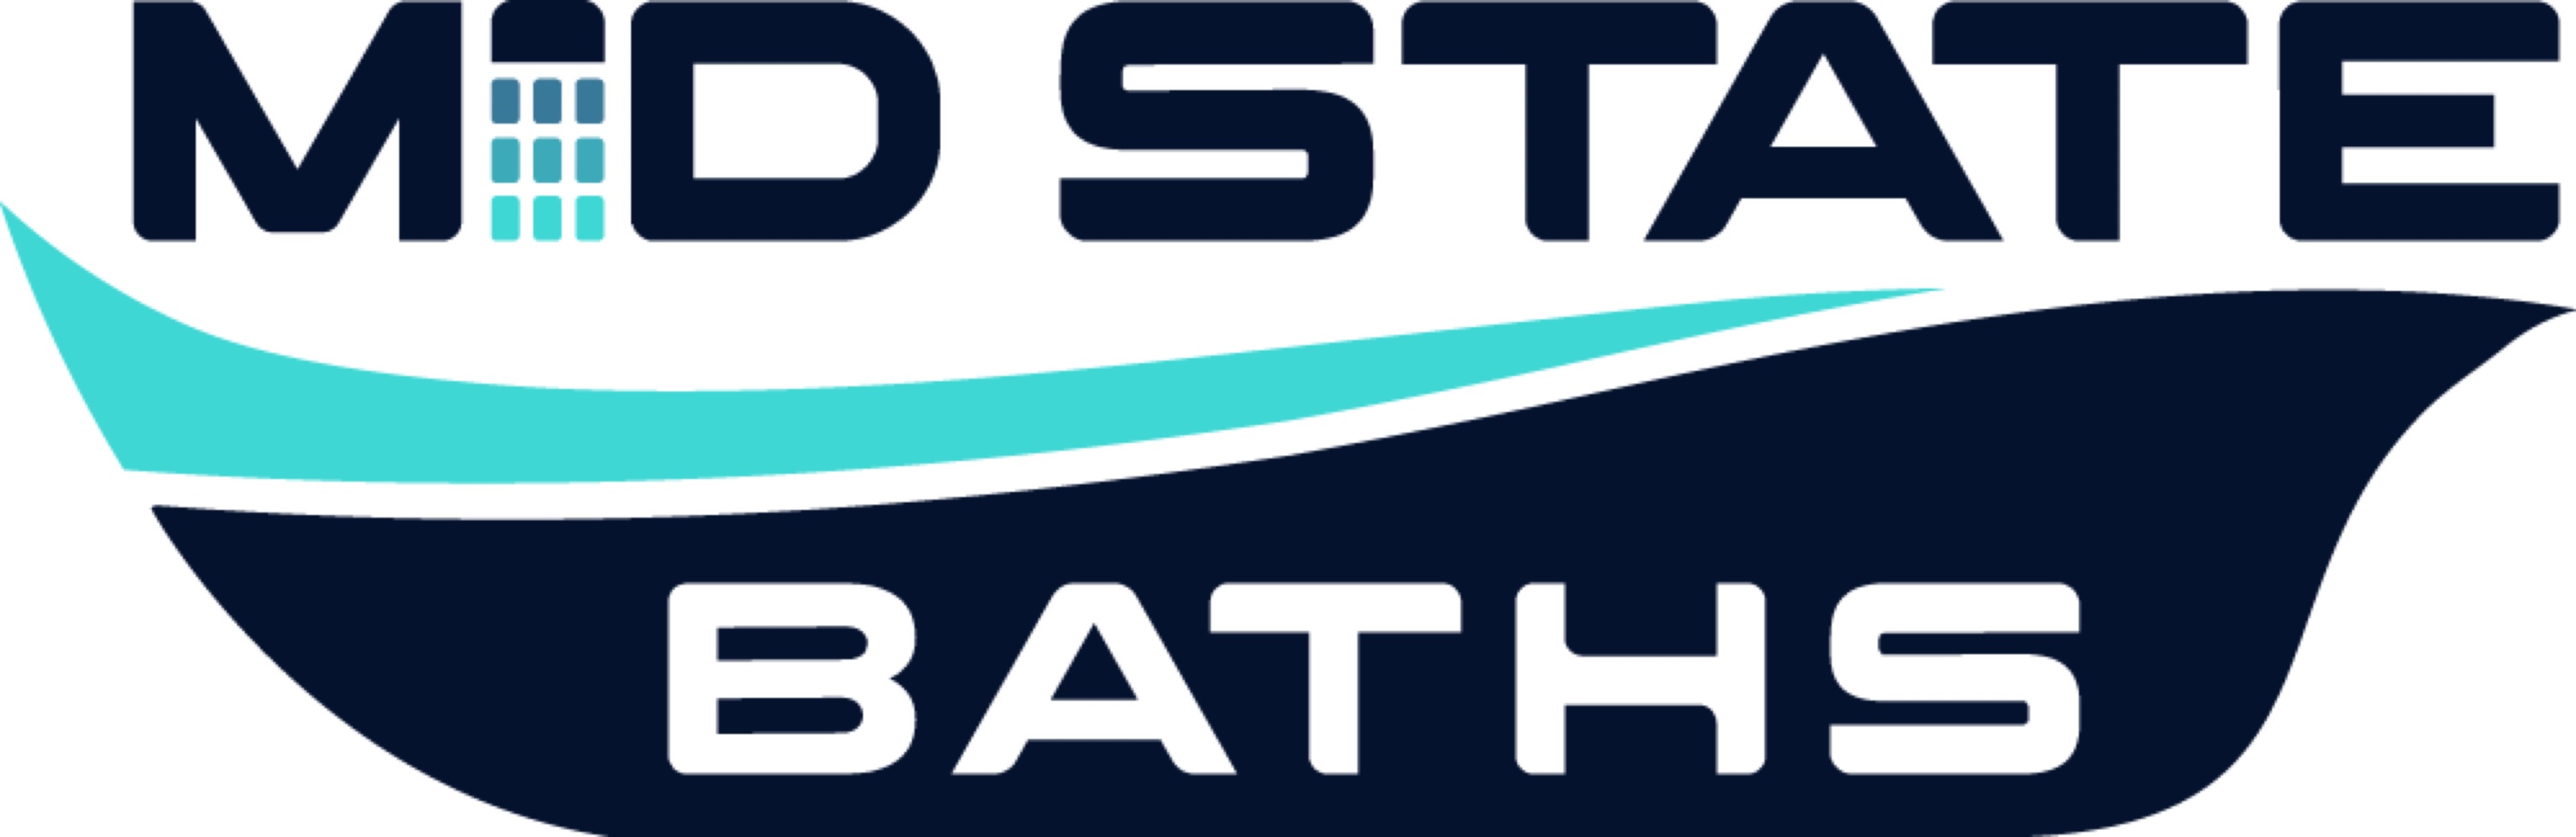 Mid State Baths LLC Logo